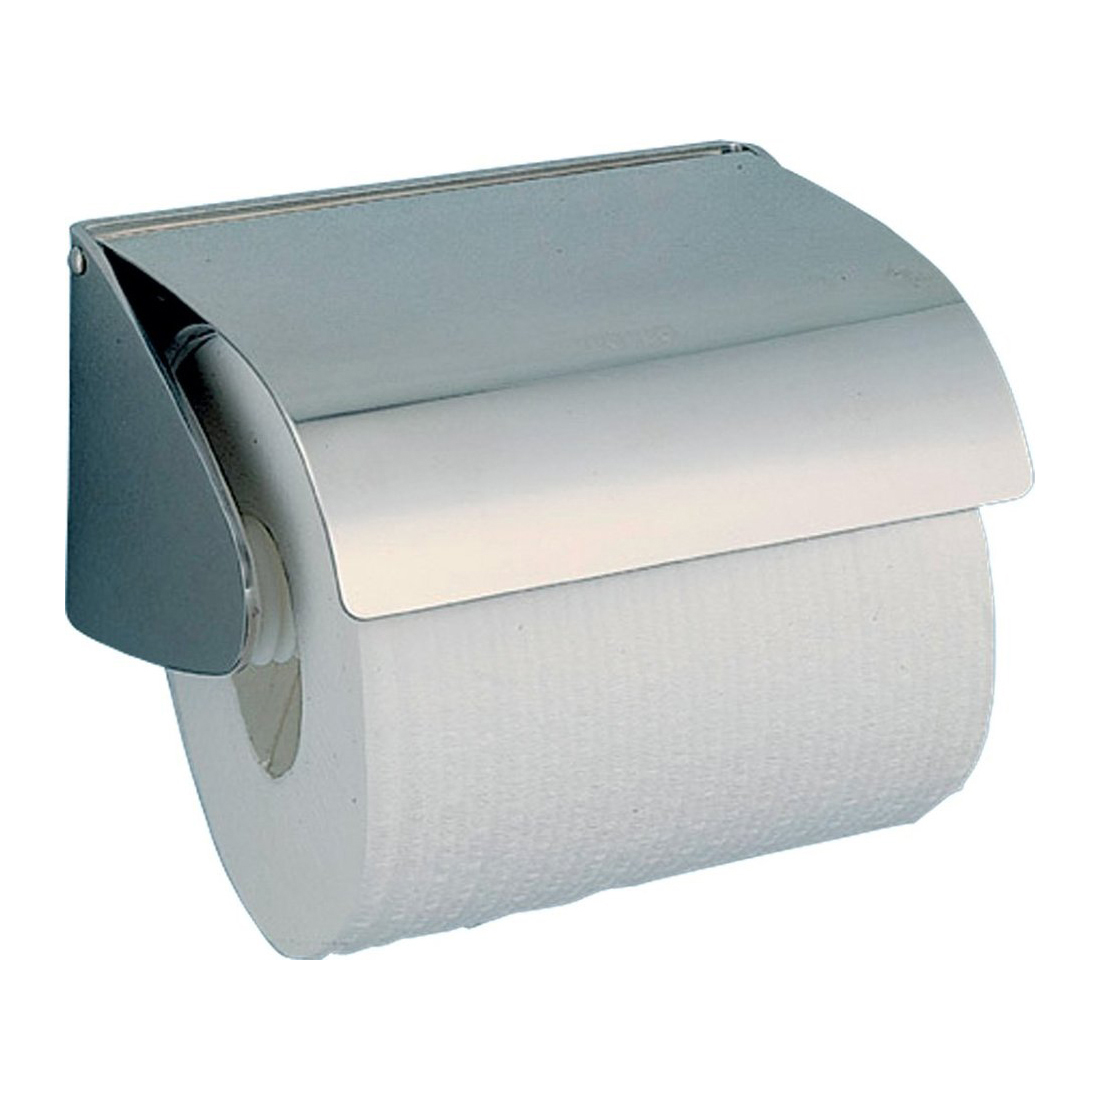 Держатель для туалетной бумаги Nofer Classic 05013.S держатель для туалетной бумаги nofer niza 16859 s